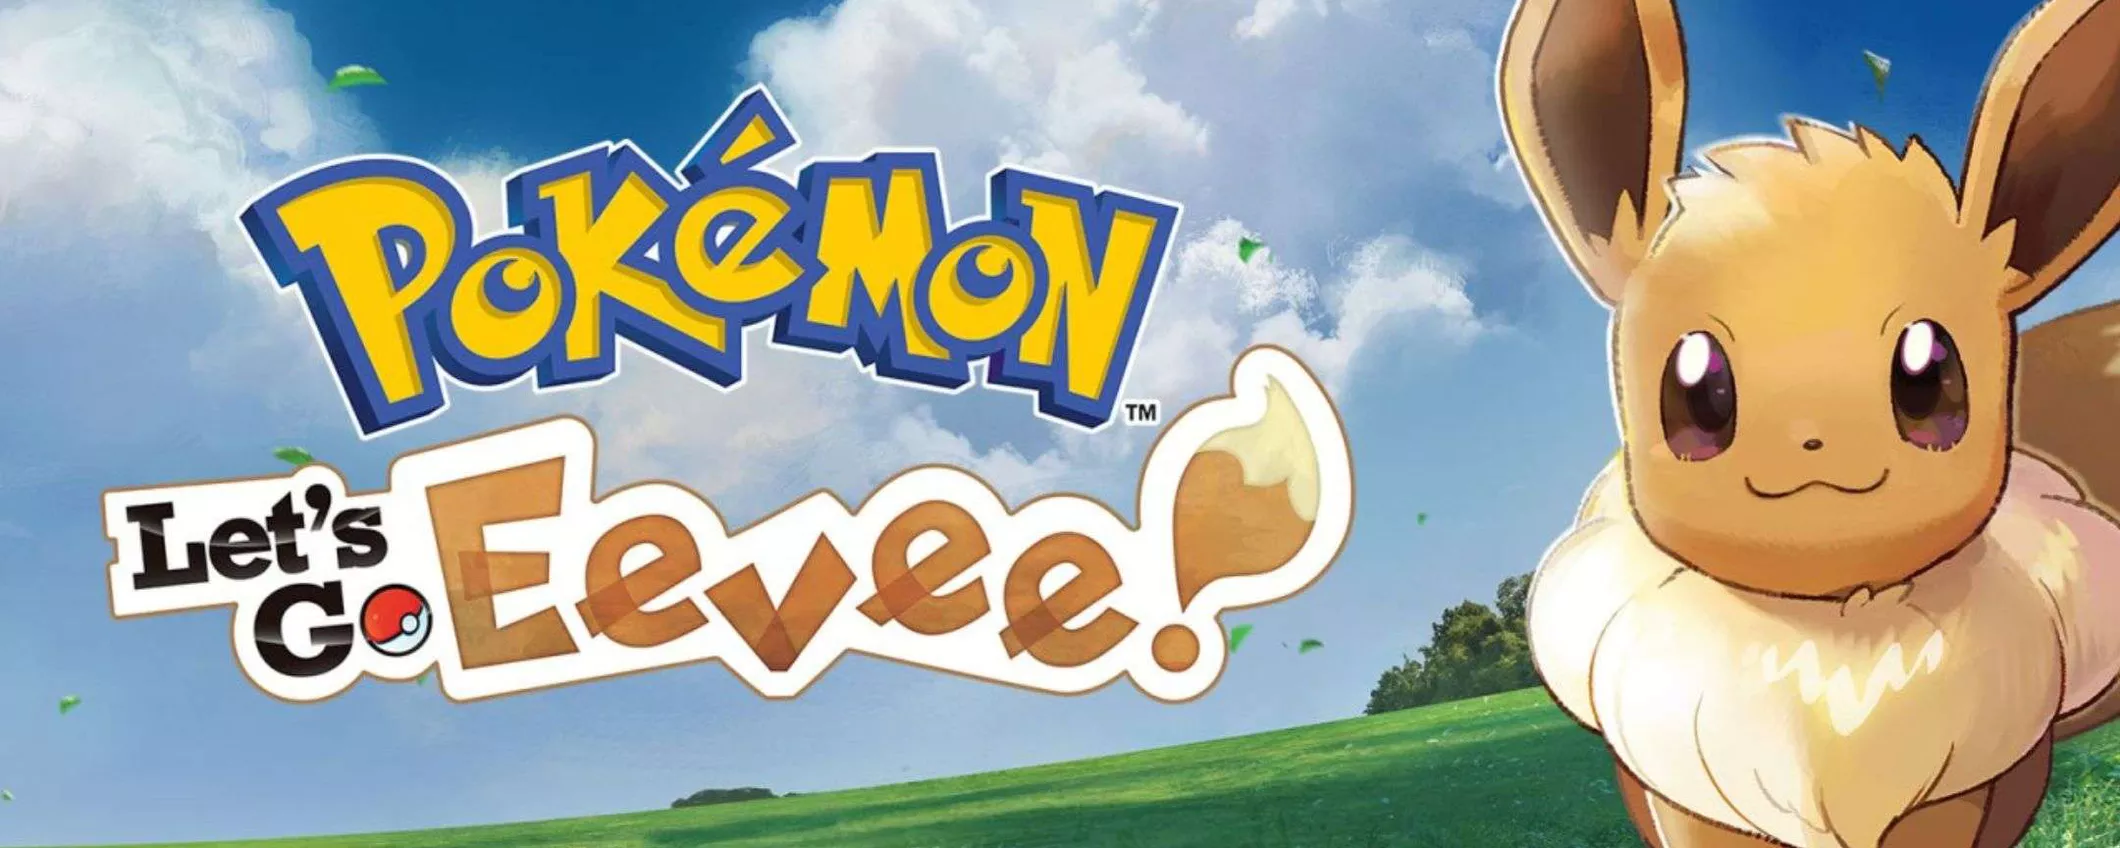 Pokémon Let's Go Evee: rivivi la tua infanzia con questo capitolo STREPITOSO